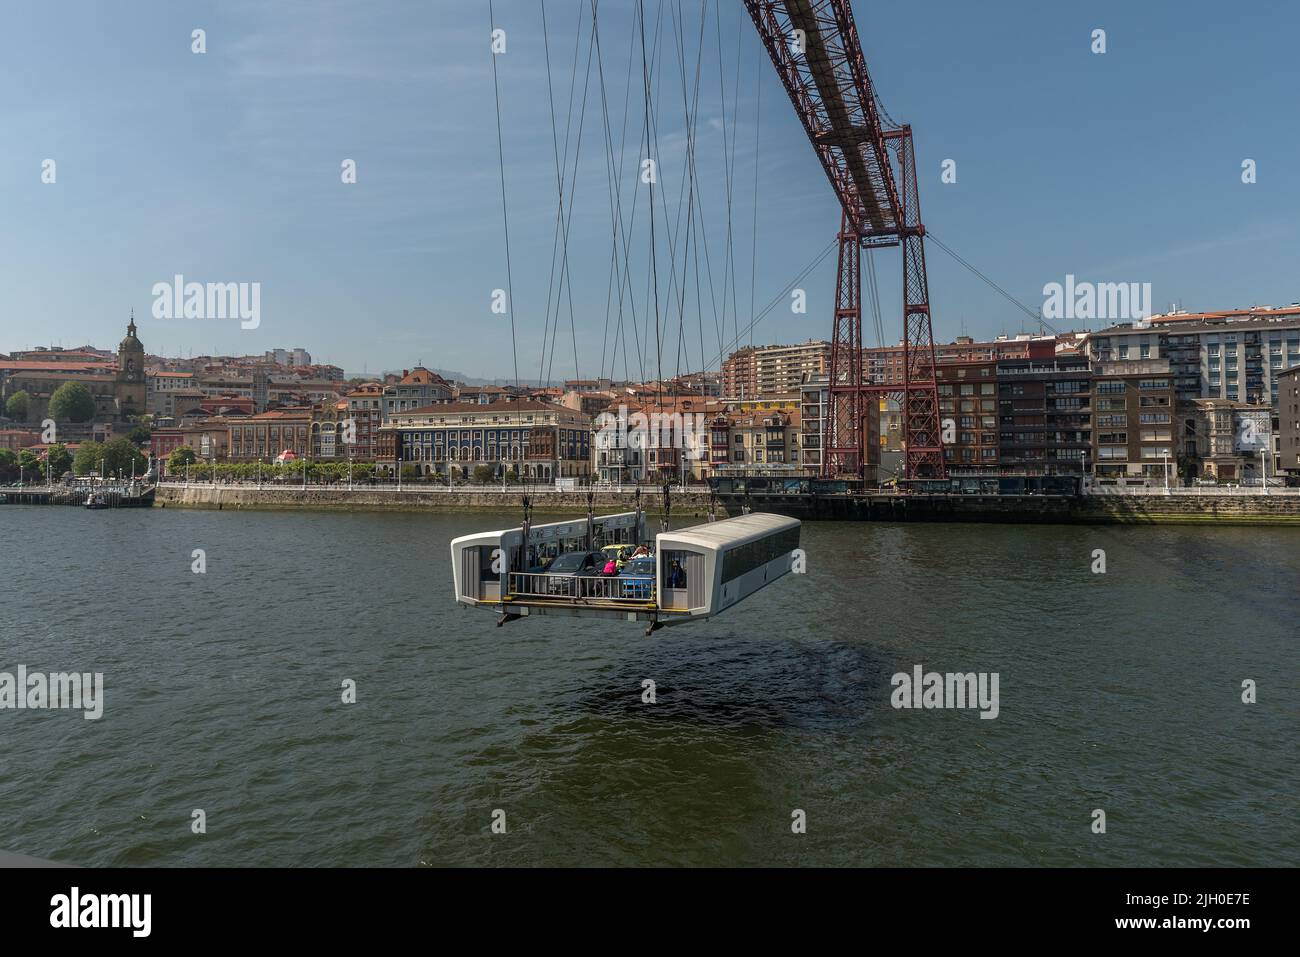 Vista del puente transportador de Vizcaya entre Portugalete y Getxo, España Foto de stock